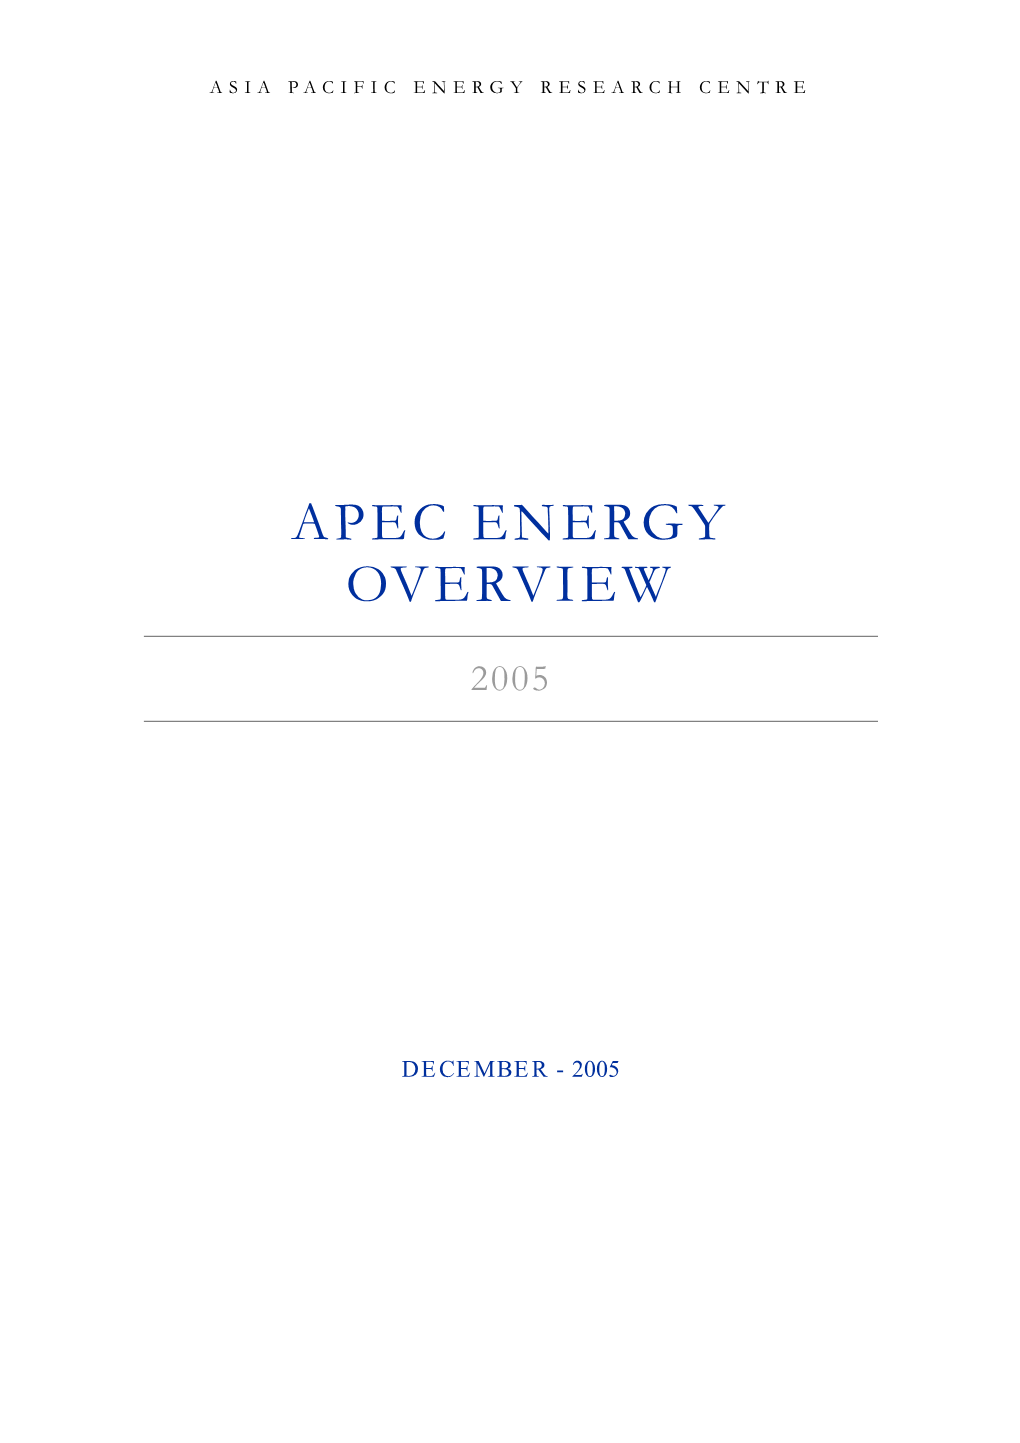 APEC Energy Overview 2005